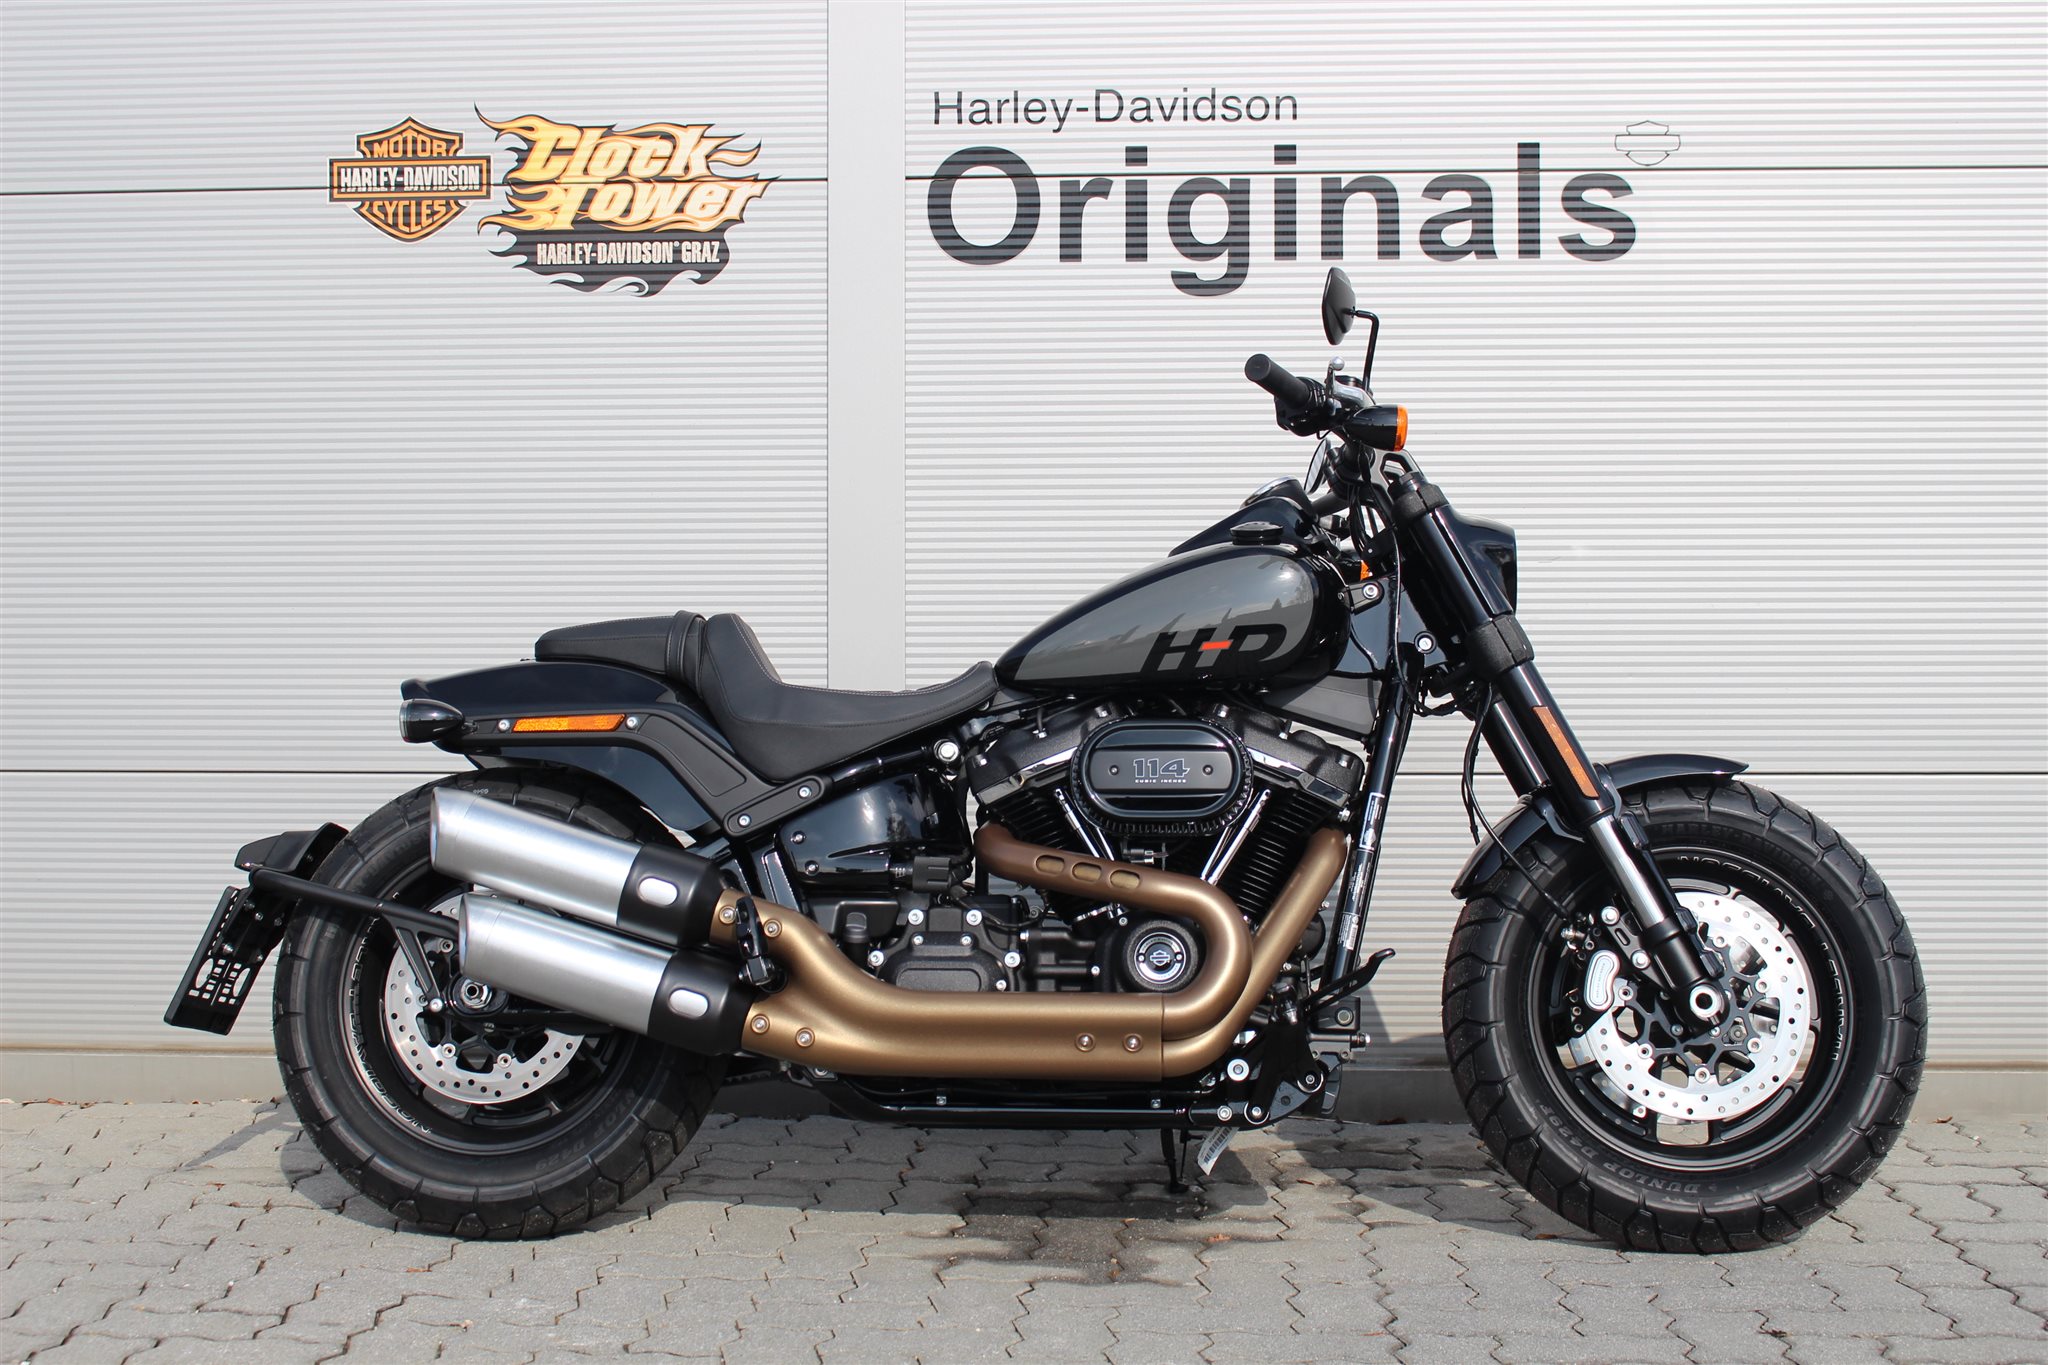 Gebrauchte und neue Harley-Davidson Motorräder aus Steiermark kaufen